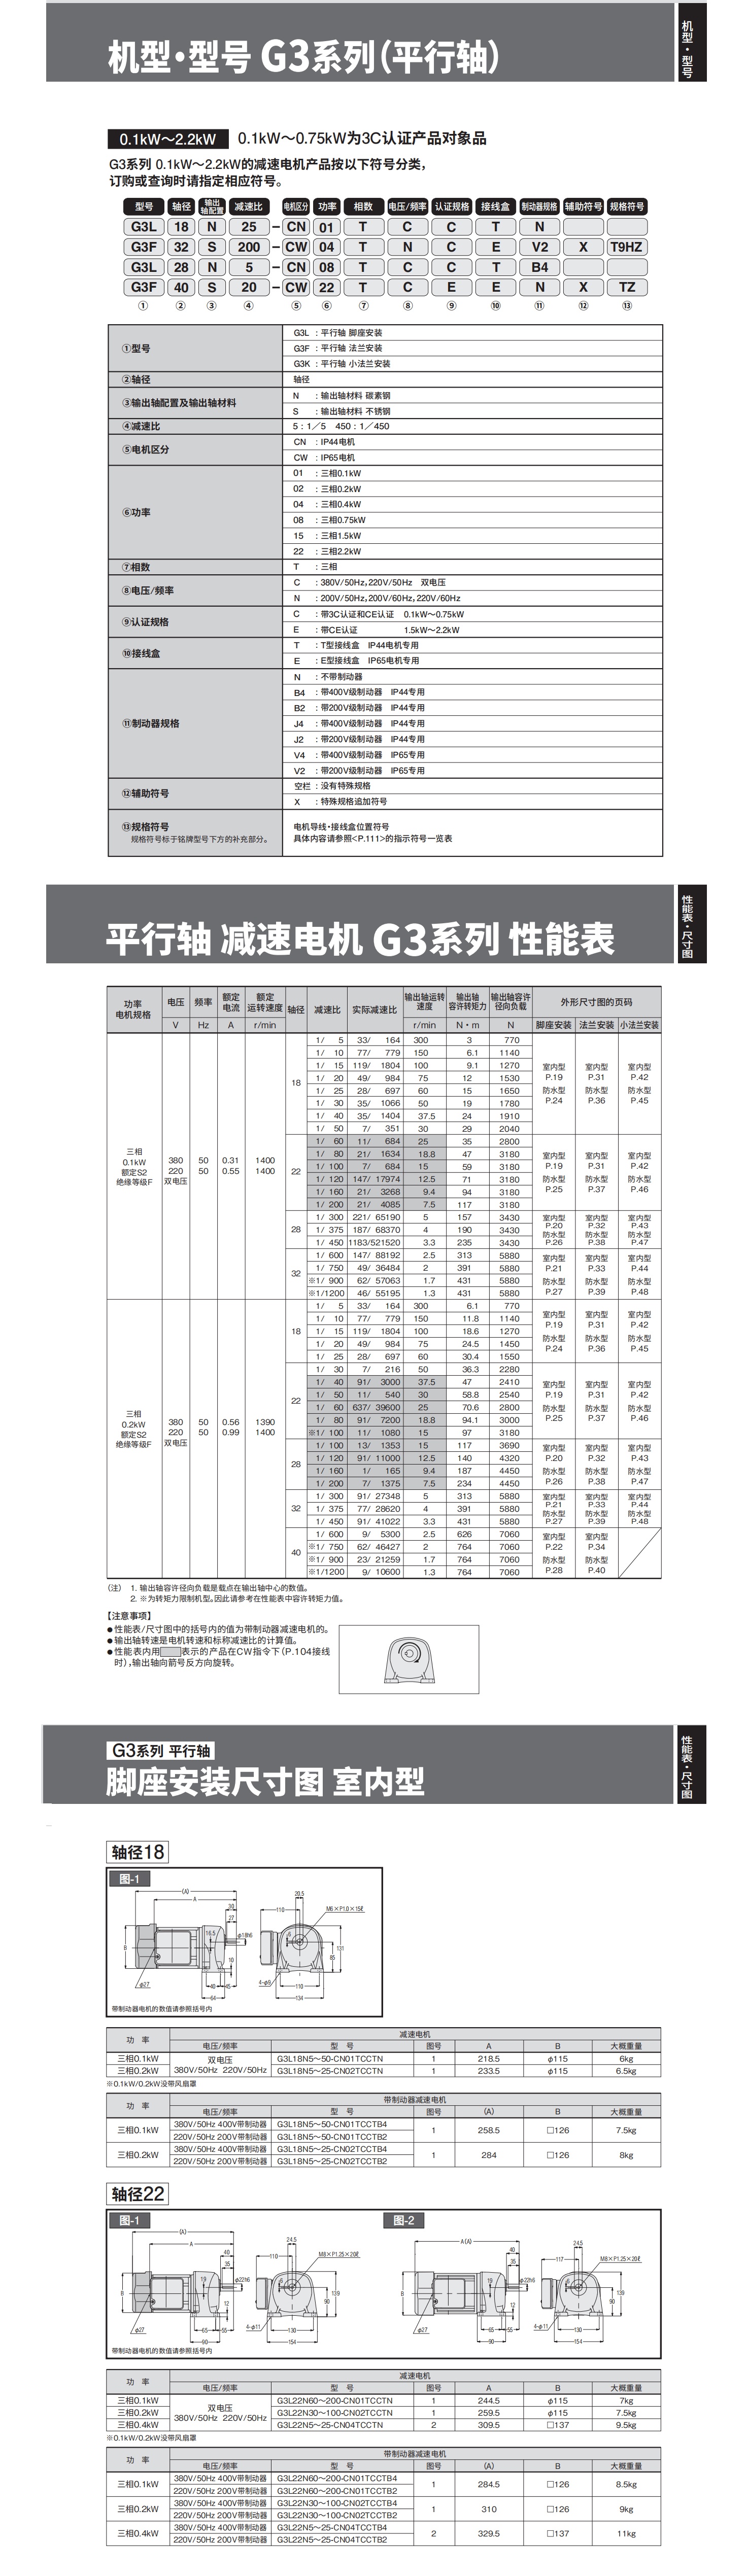 GTR1详情页_看图王.jpg